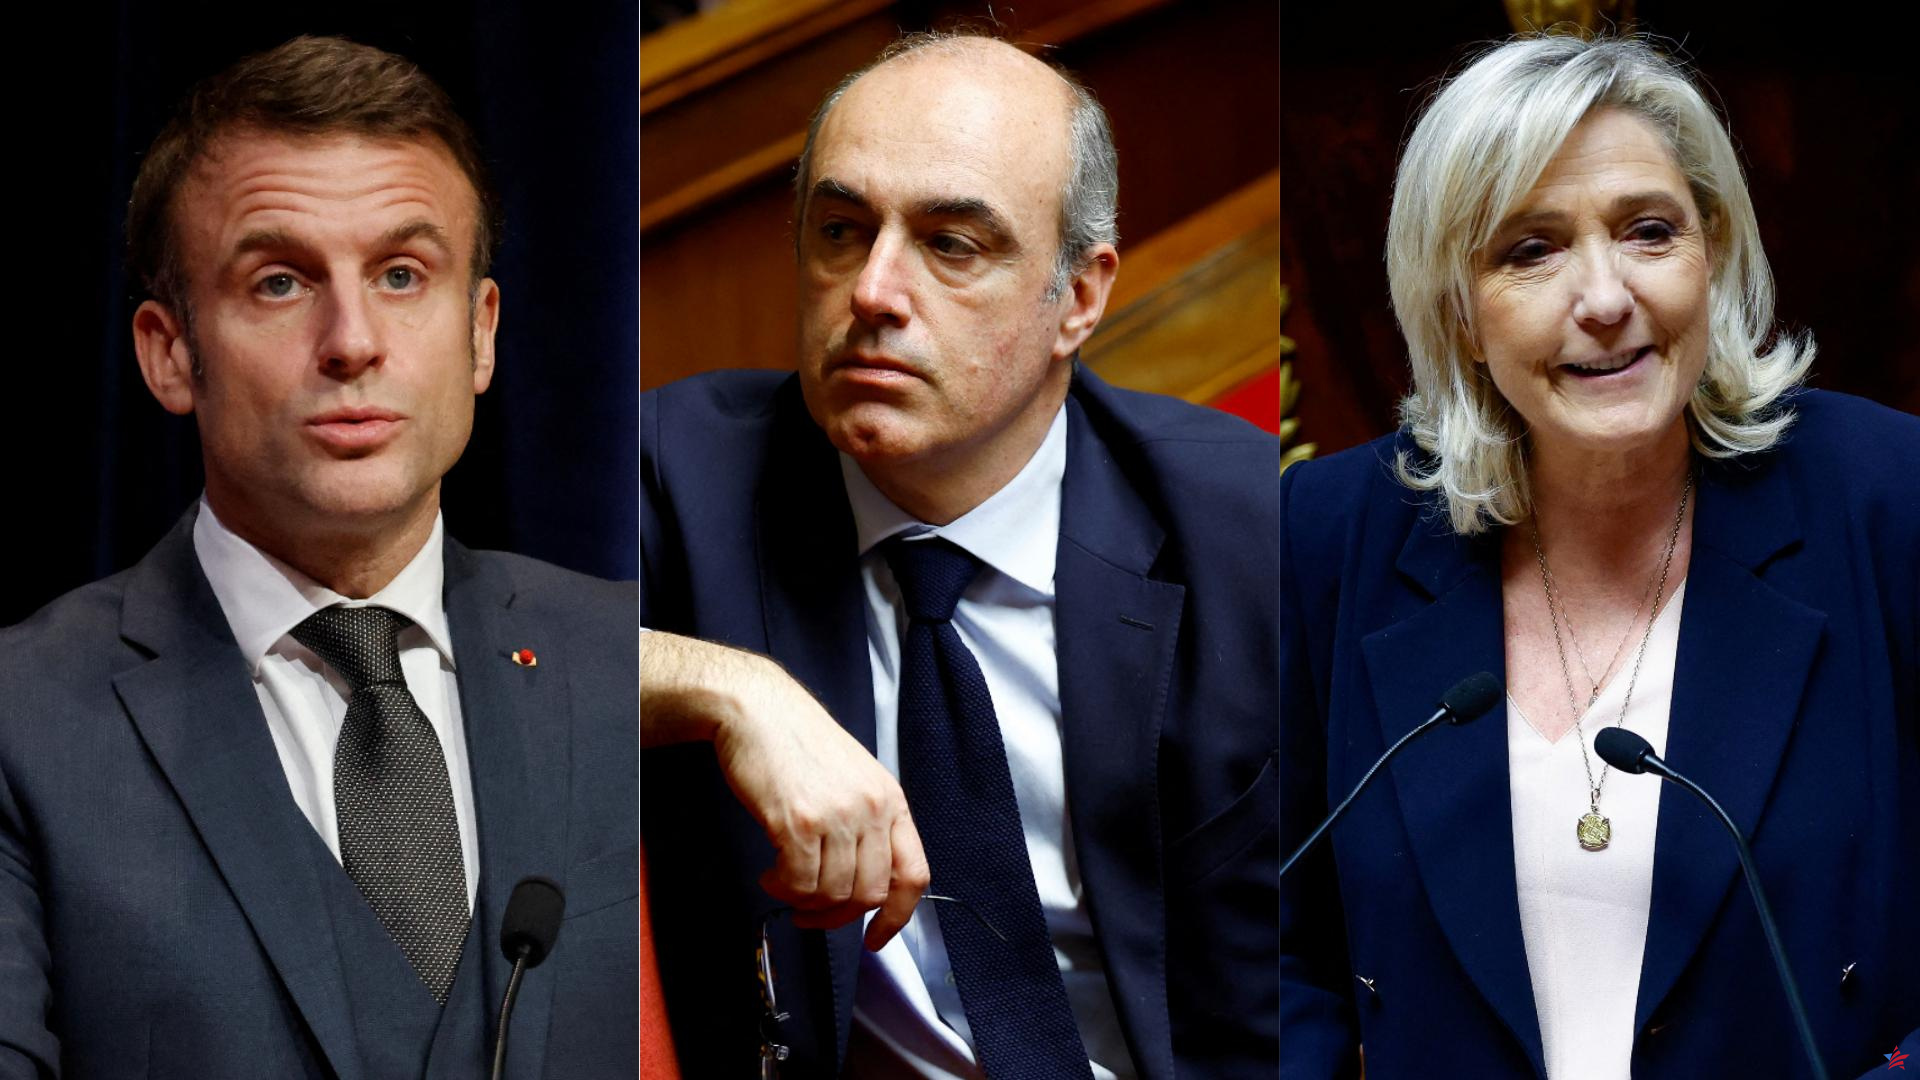 Presidencial 2027: para Marleix, Macron “decidió dejar las llaves del Elíseo a Marine Le Pen”